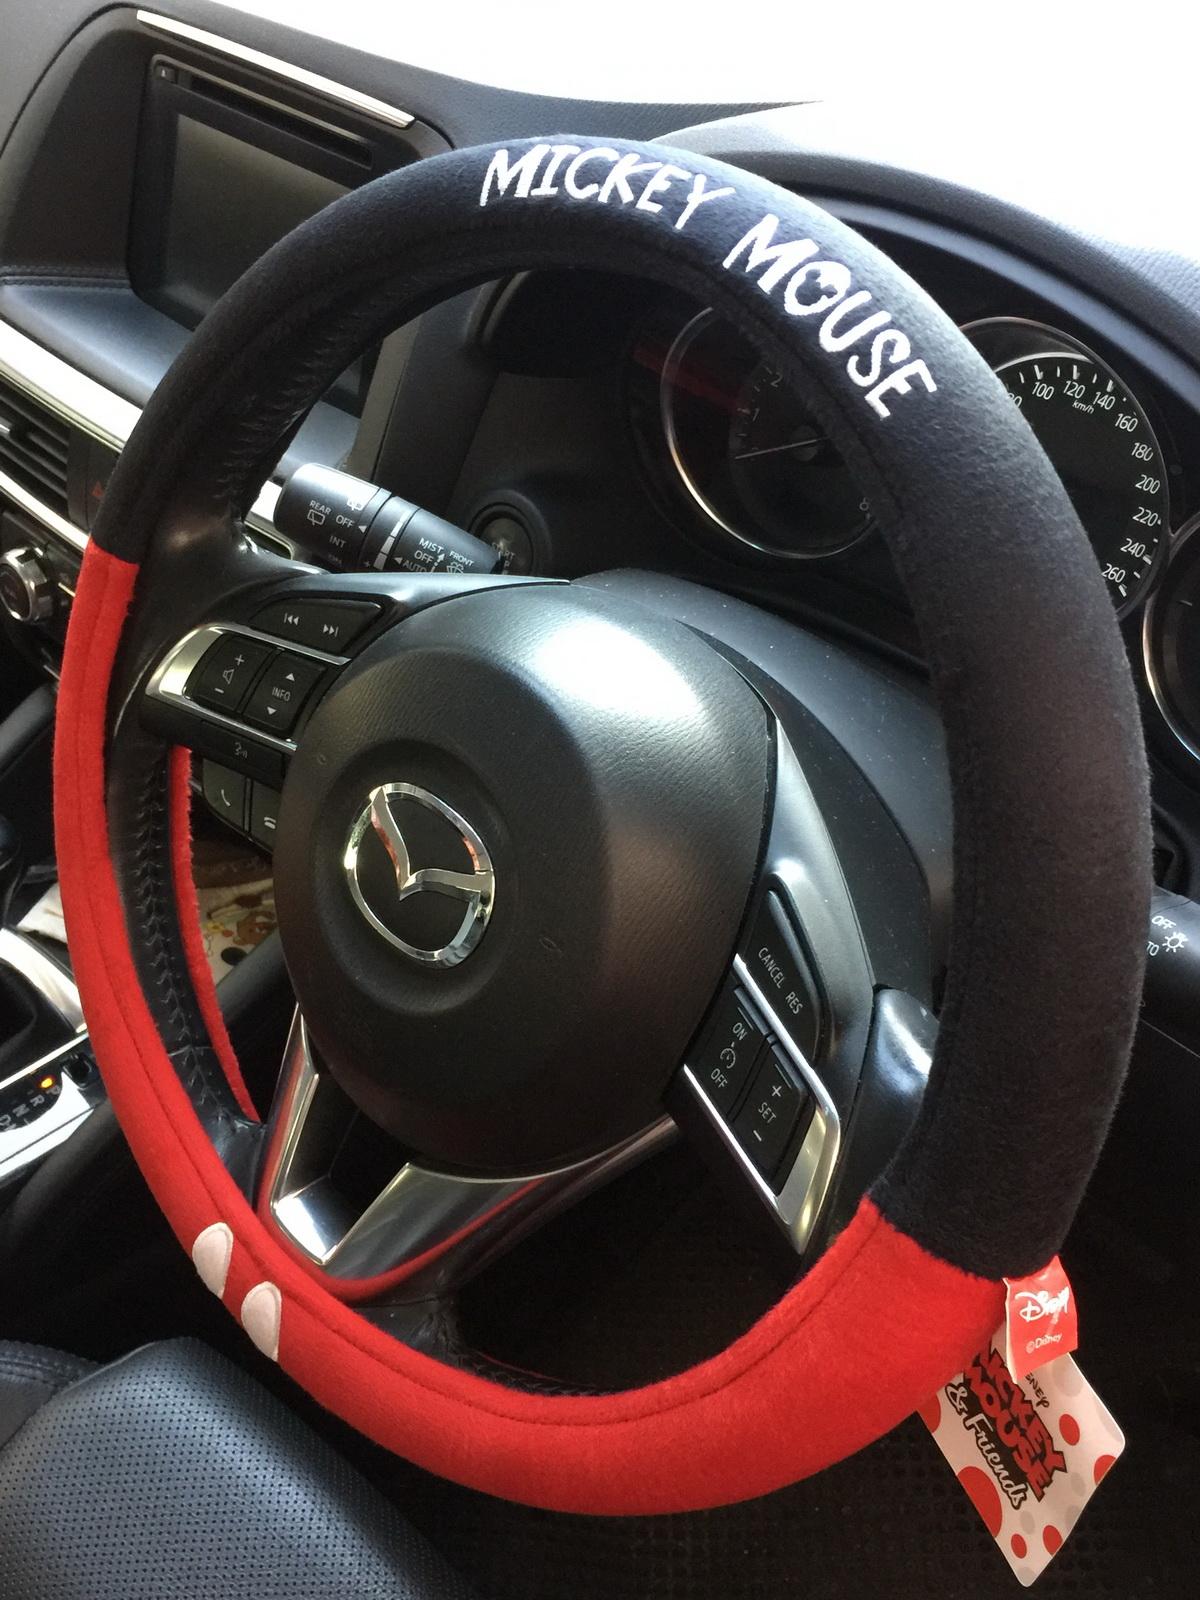 ลิขสิทธิ์แท้ มิกกี้เม้าส์ ที่หุ้มพวงมาลัย ตกแต่งรถยนต์ สีดำแดง Mickey Mouse Disney Car Steering Wheel Cover Black, Red